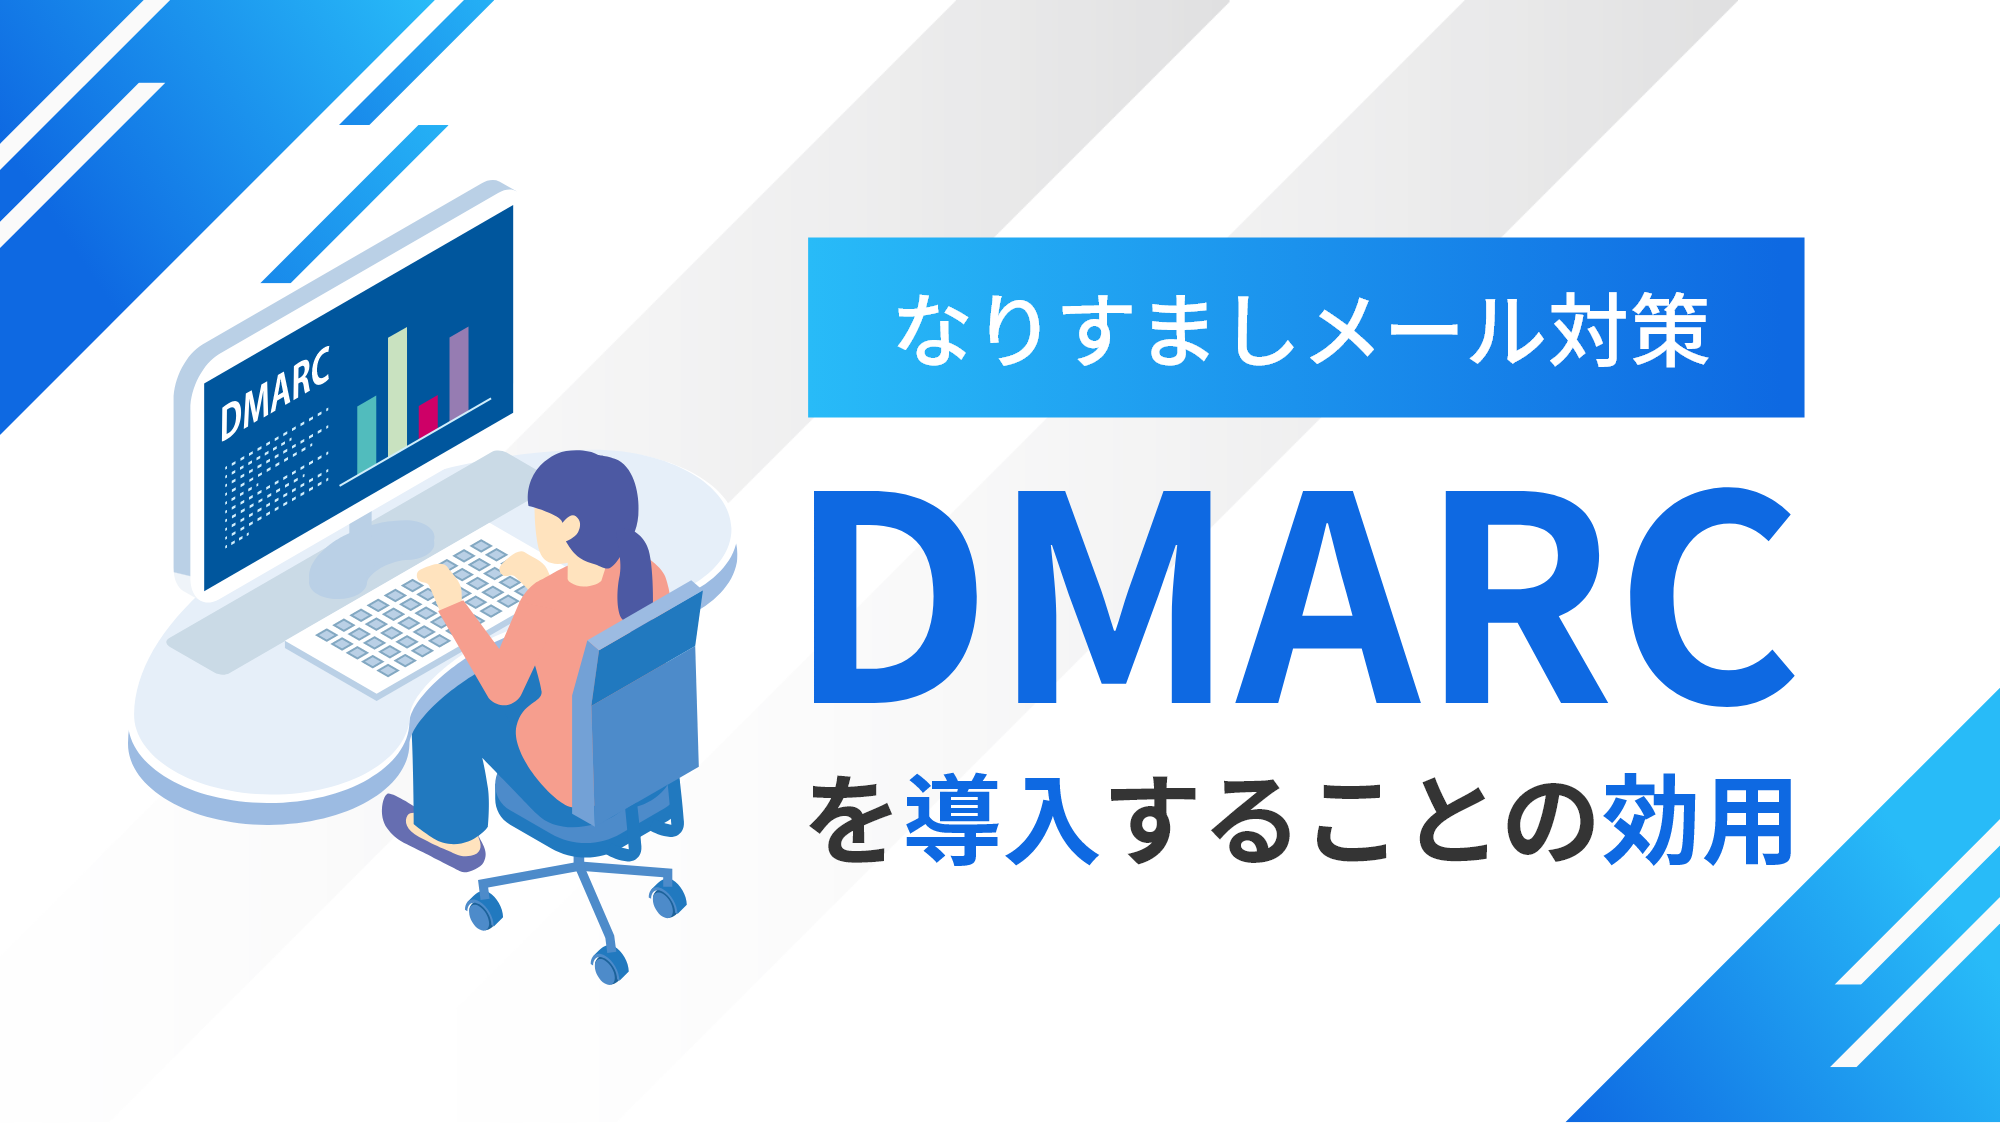 なりすましメール対策 DMARC を導入することの効用